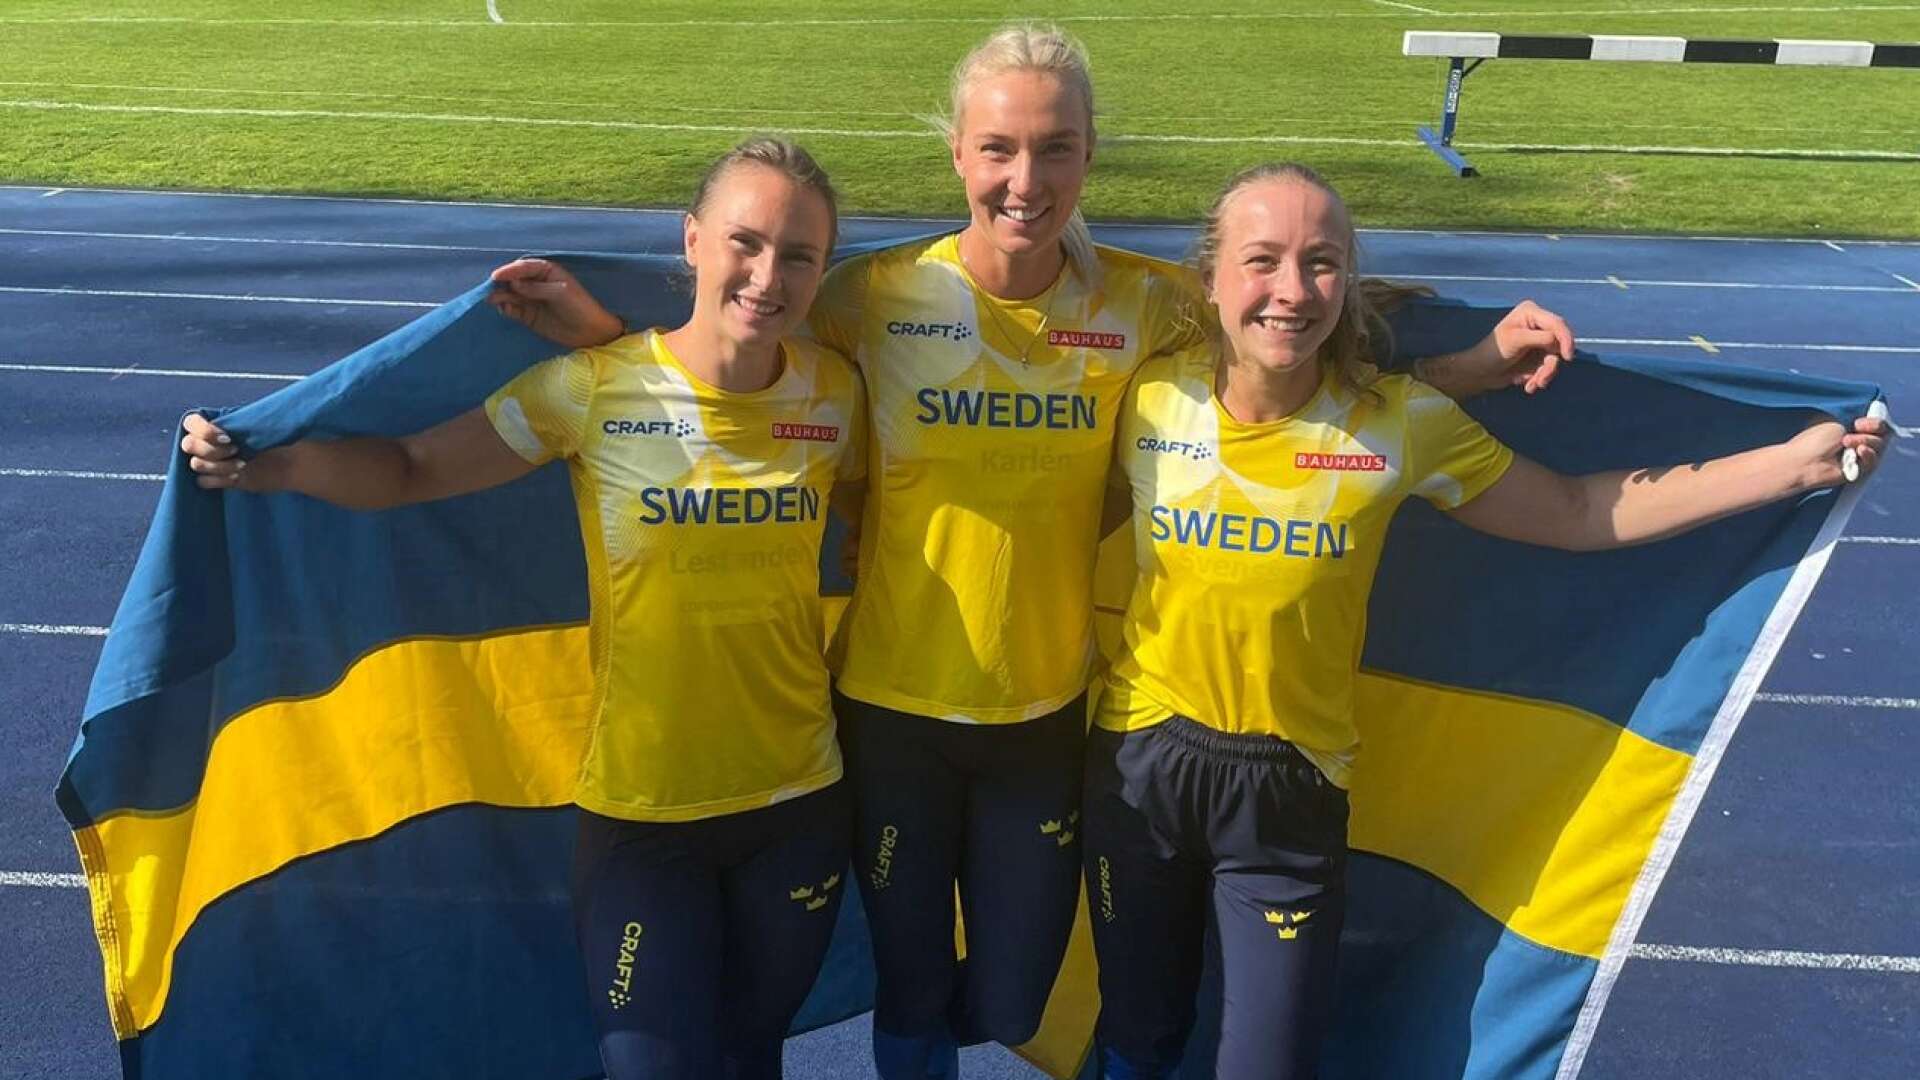 Svensk NM-trippel. Kaiza Karlén tog sin första NM-titel och fick med sig lagkompisarna Jenny Lestander och Karolina Svensson upp på pallen.